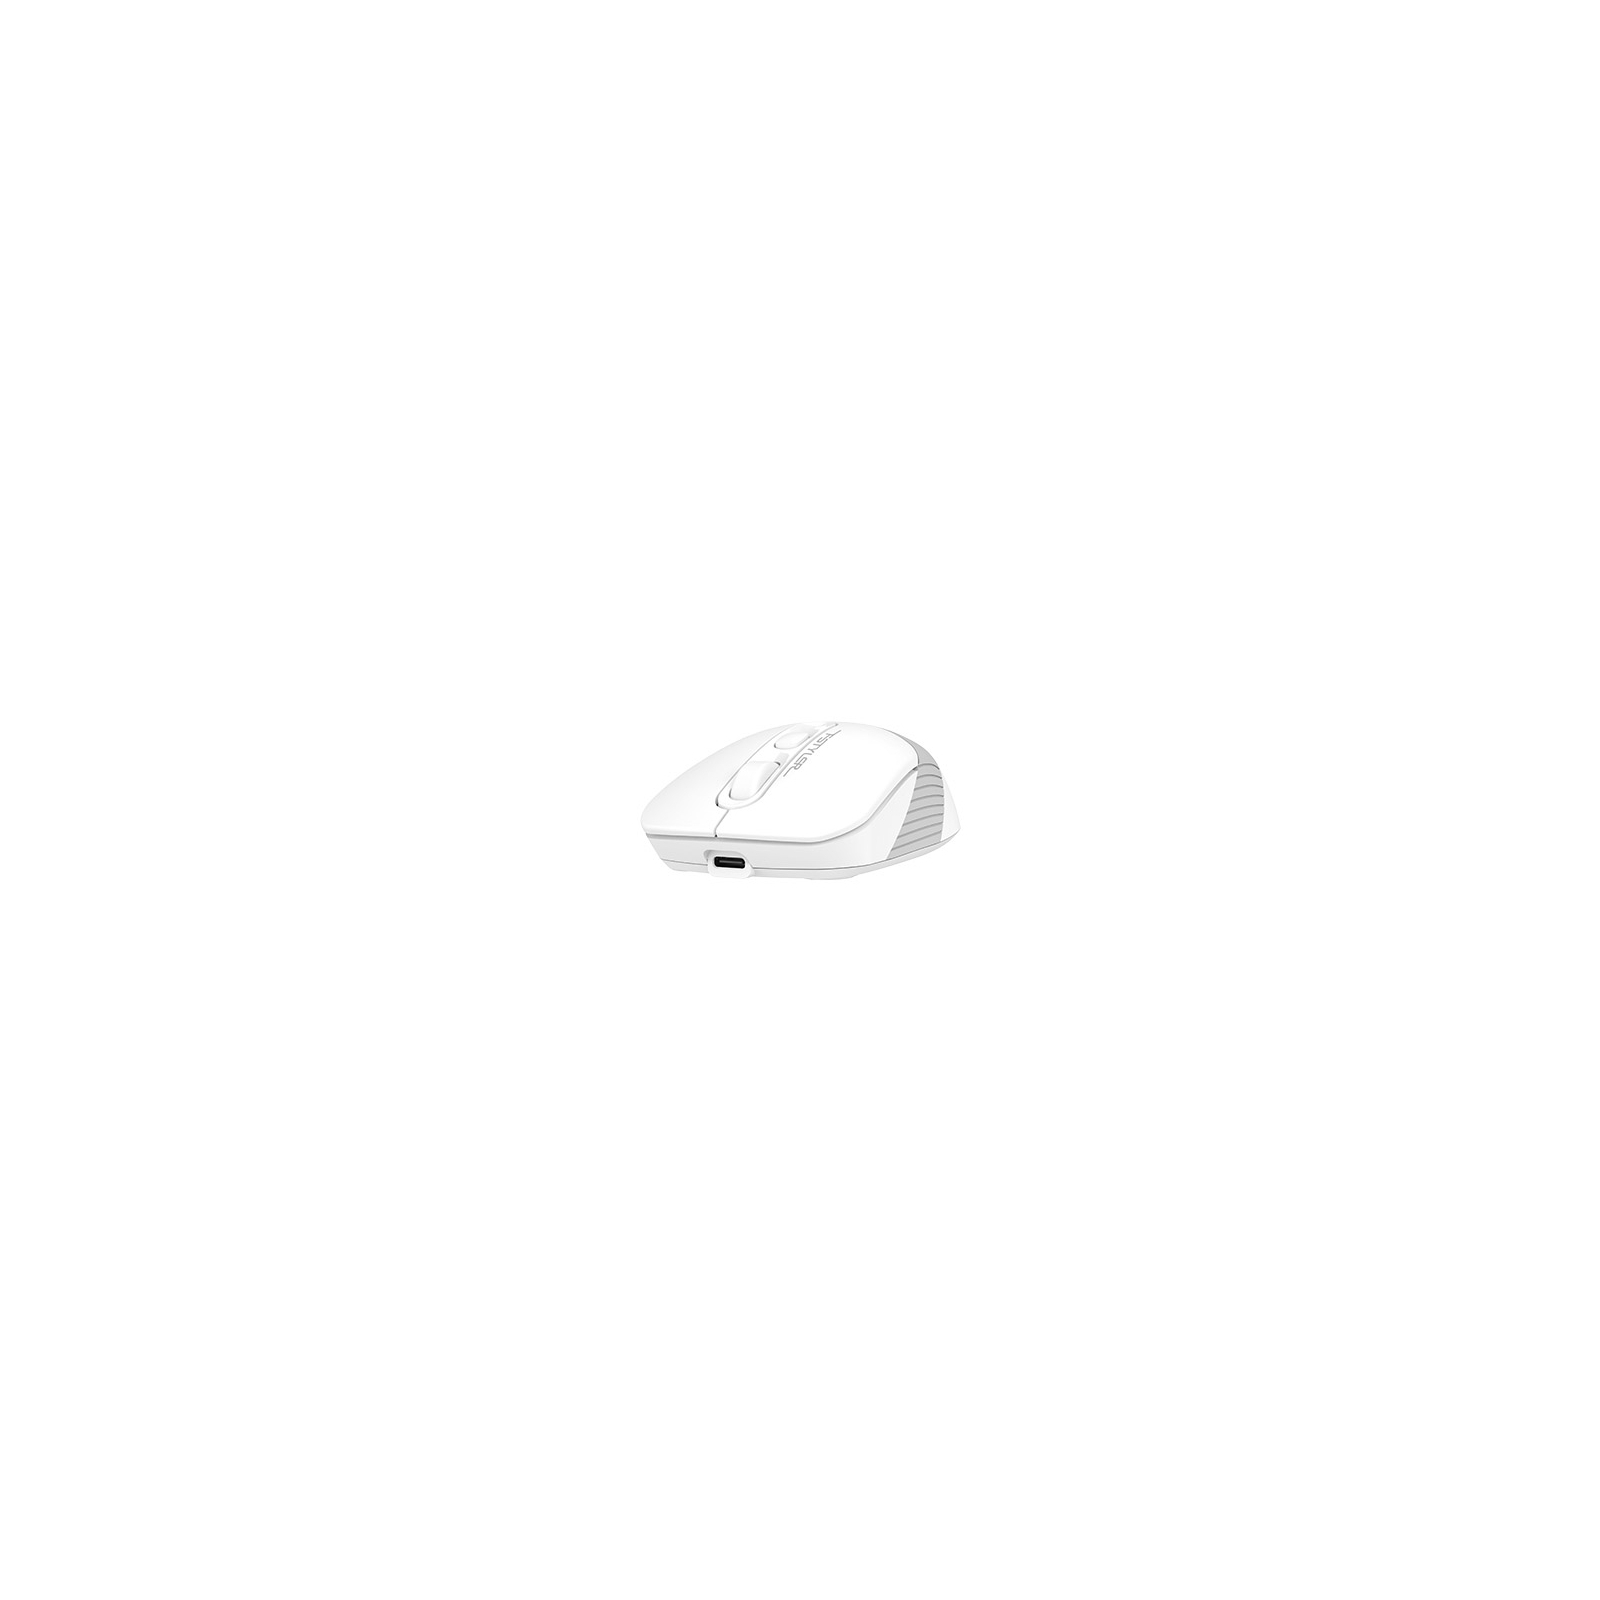 Мишка A4Tech FB10CS Wireless/Bluetooth Grayish White (FB10CS Grayish White) зображення 4